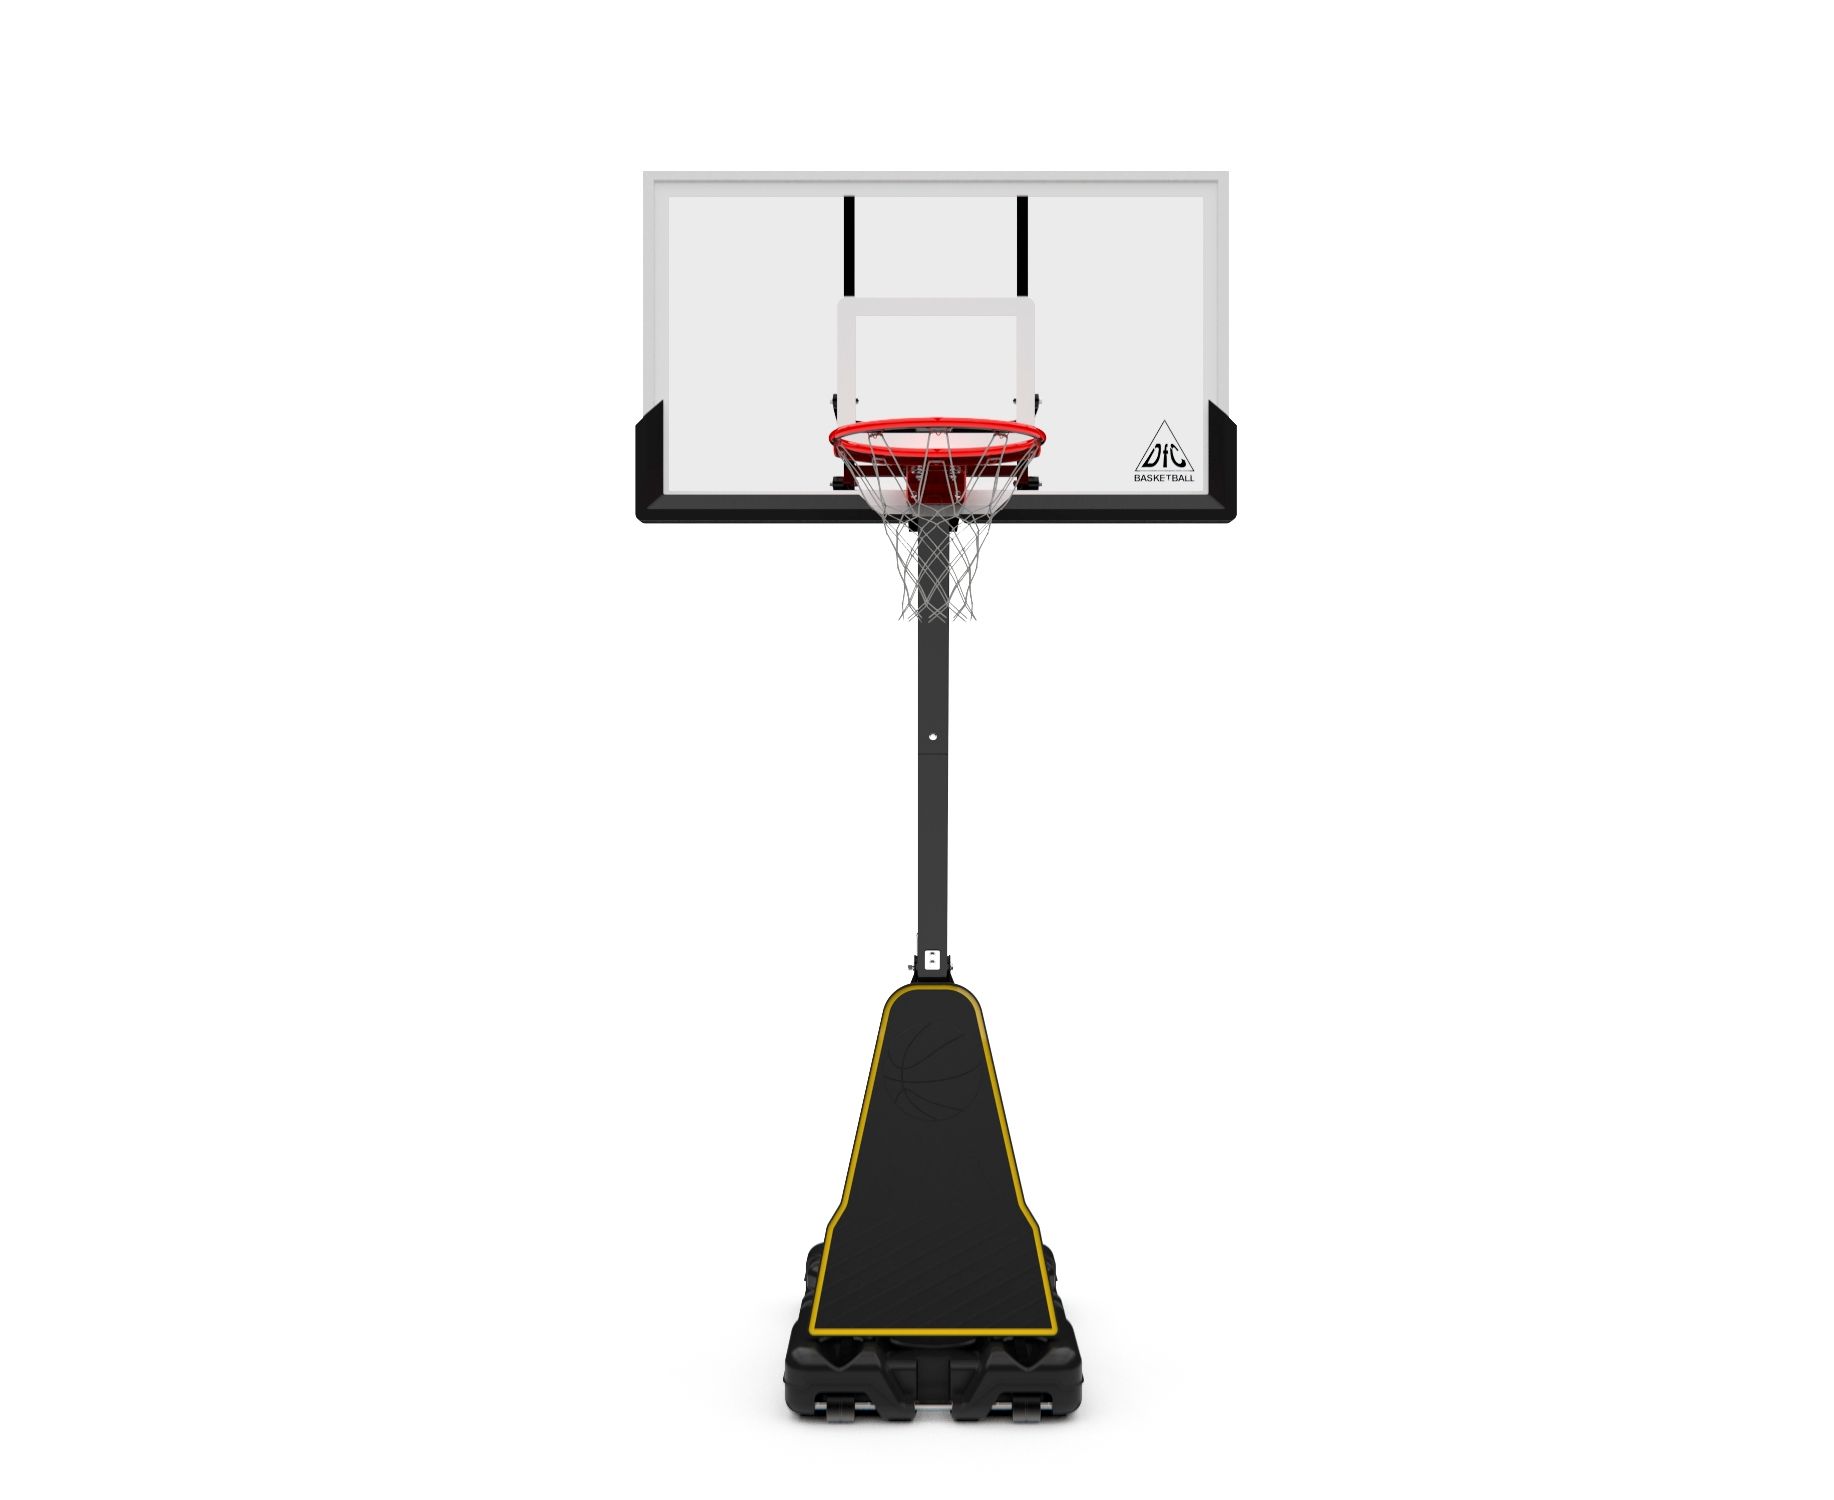 Фото баскетбольная мобильная стойка dfc reactive 54g